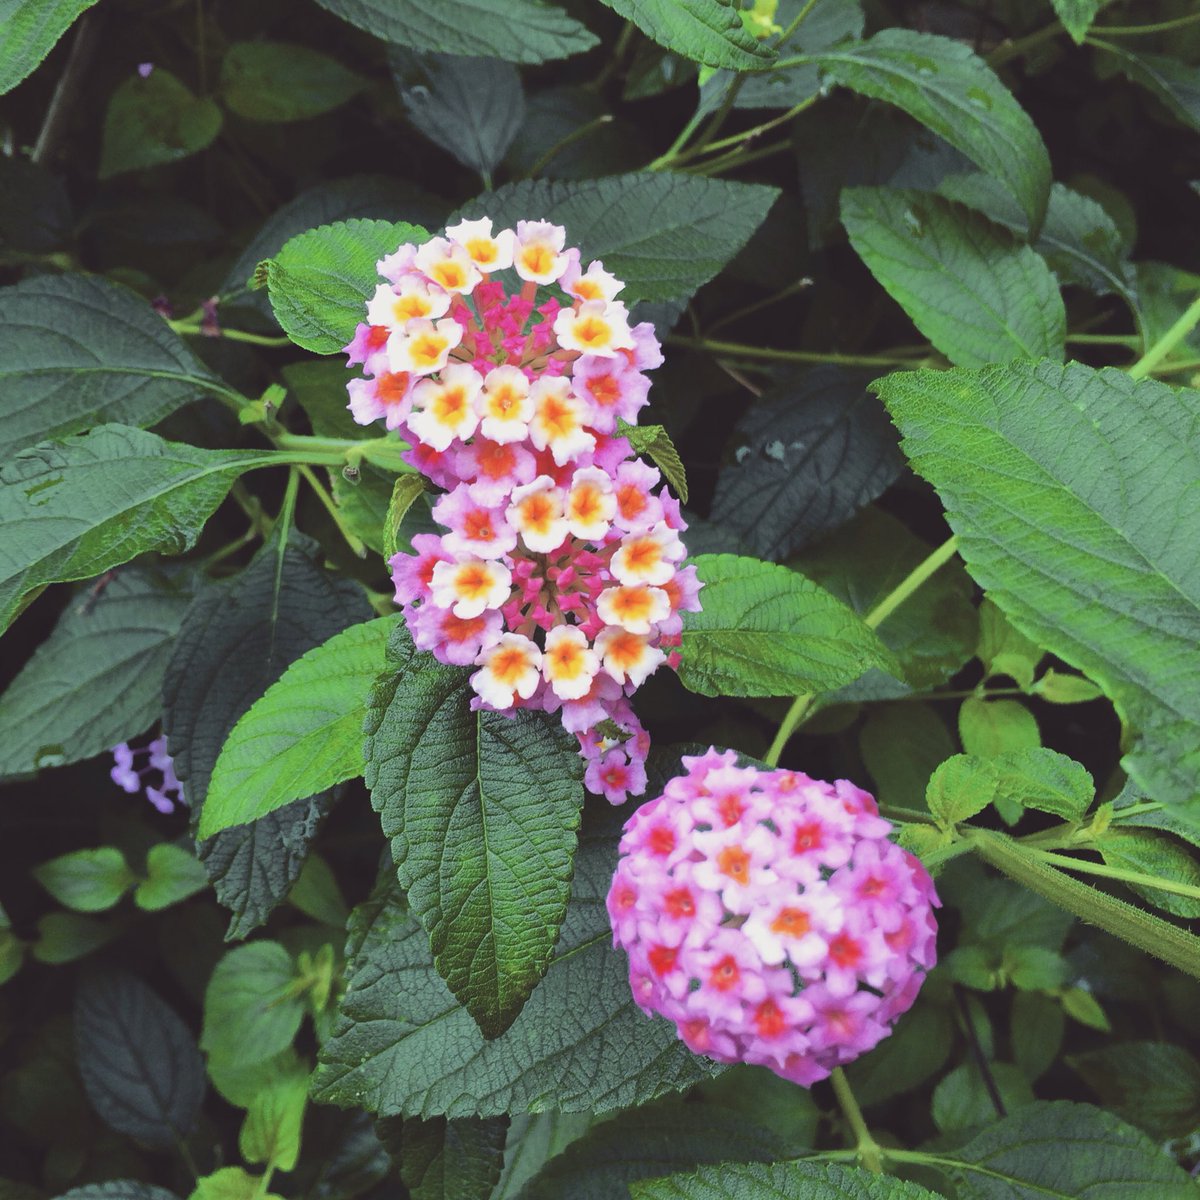 林 幸治 トライセラトップス この小さい紫陽花みたいな花かわいい ランタナっていうのかな T Co 5beicthyyt Twitter